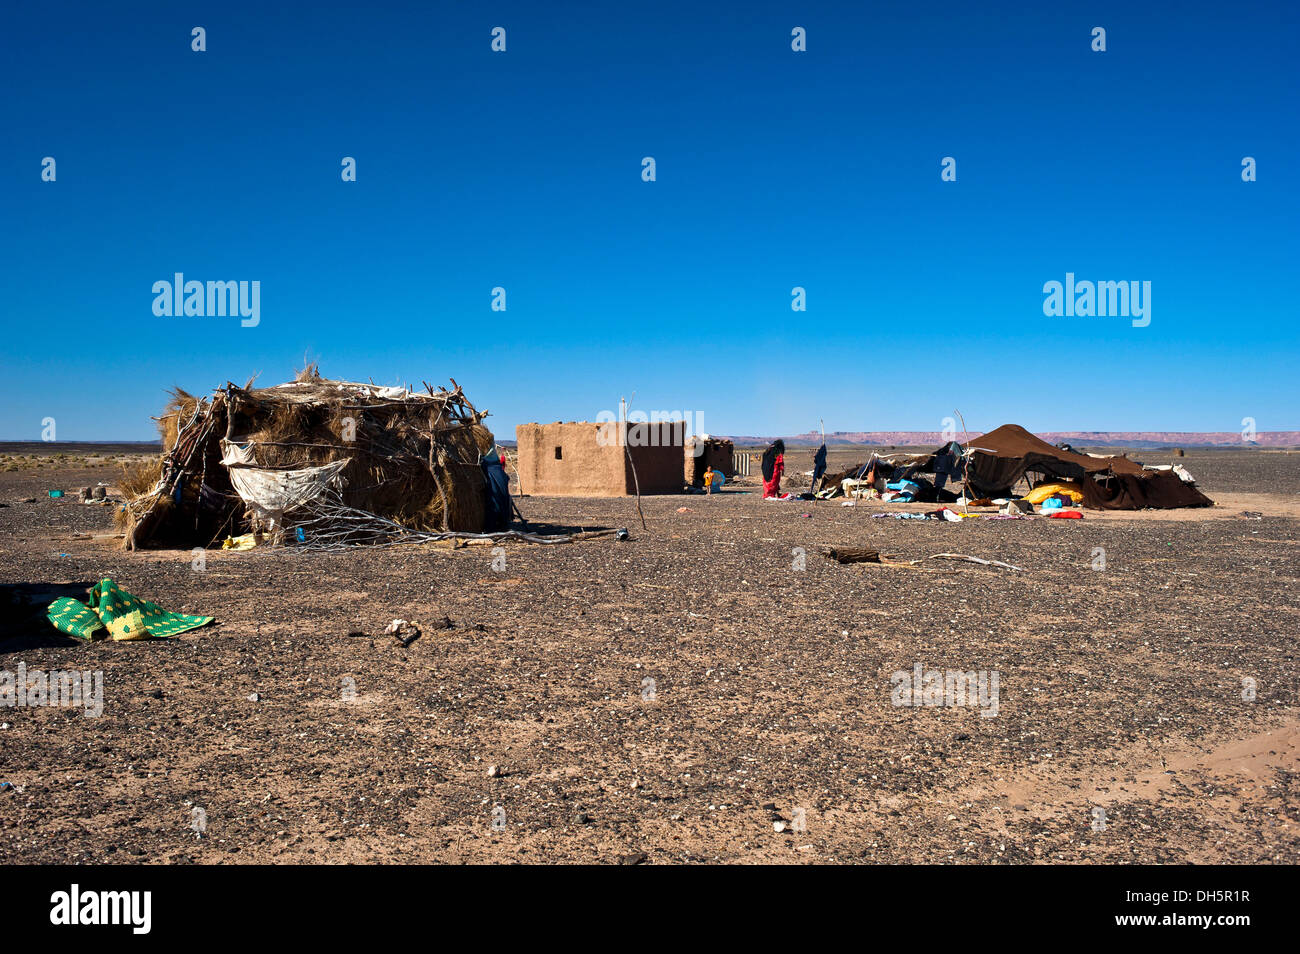 Tente nomade et des logements d'une famille nomade, sur un plateau désert pierreux, Hamada, l'Erg Chebbi, dans le sud du Maroc, Maroc, Afrique Banque D'Images